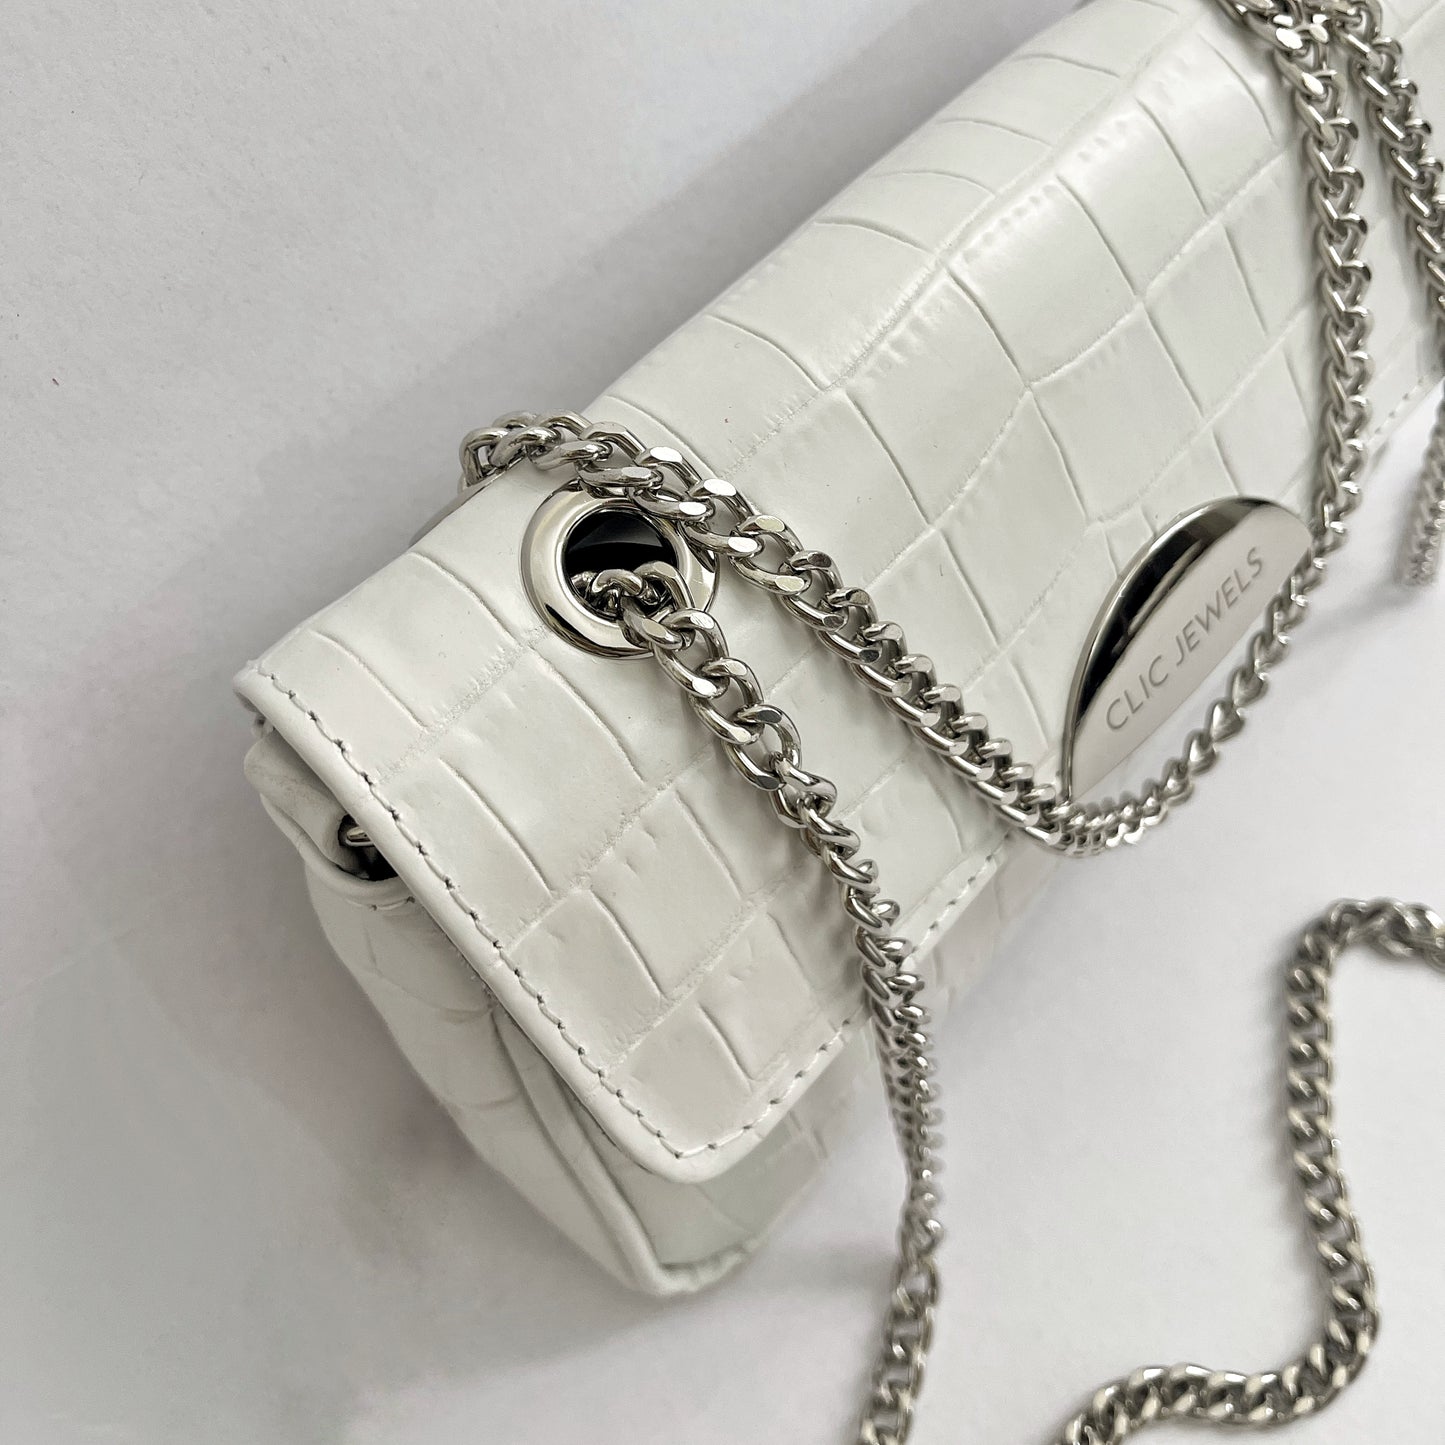 NEIRA MINI (white croco genuine leather)